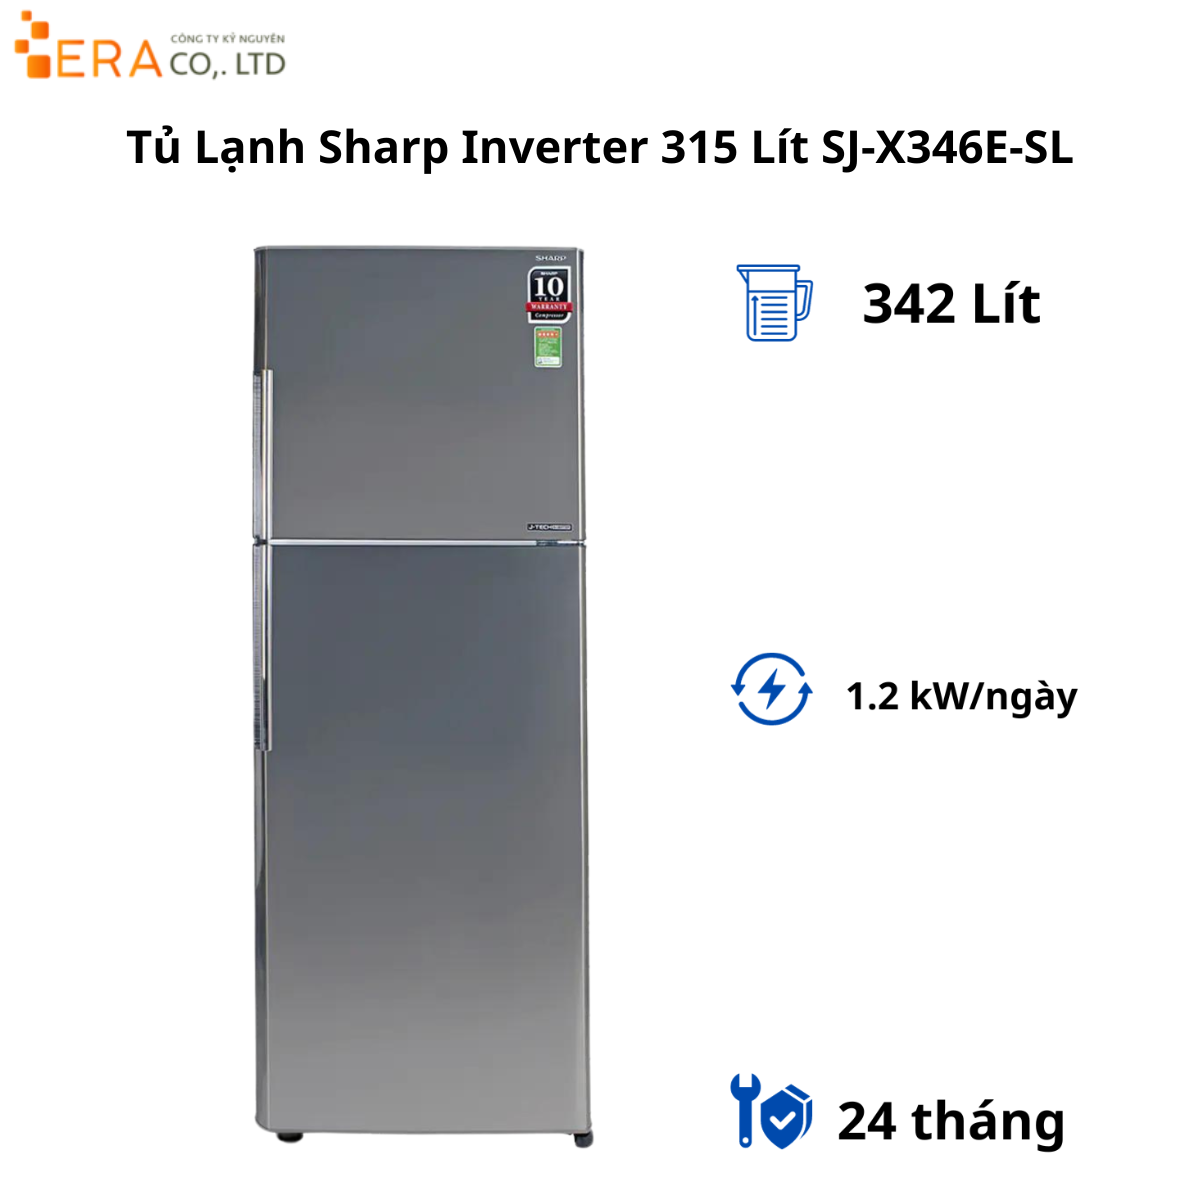  Tủ Lạnh Sharp Inverter 315 Lít SJ-X346E-SL 